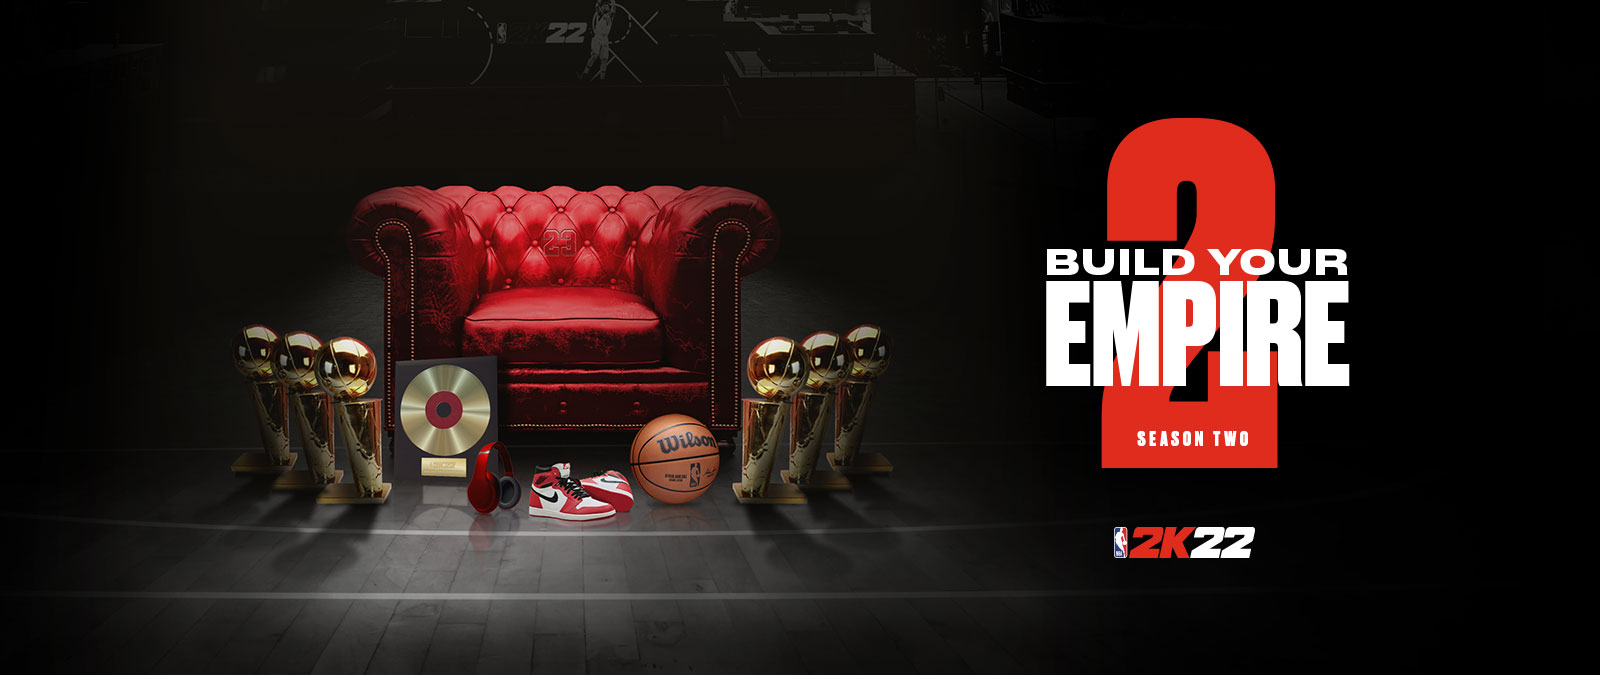 Bâtissez votre empire dans la Season 2 de NBA 2k22 : plusieurs trophées sont déposés autour d’une chaise en cuir rouge.